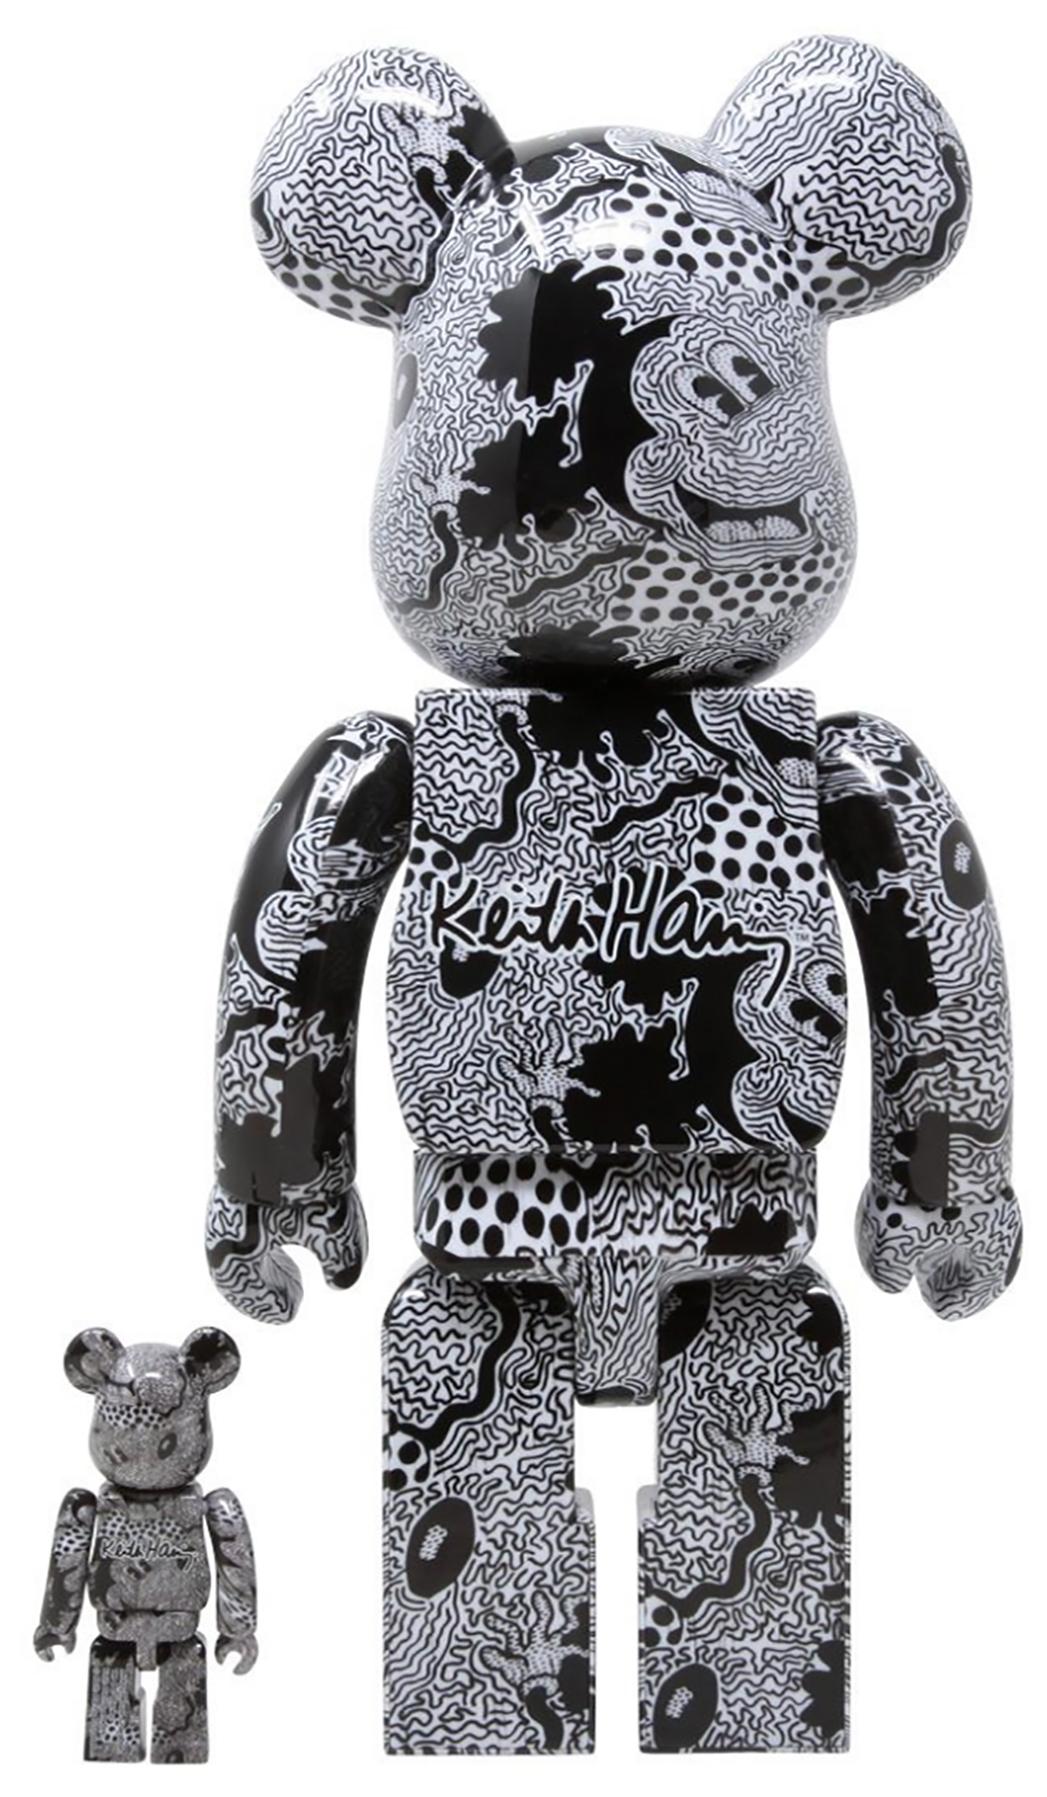 Keith Haring Bearbrick 400% Figures: Satz von 4 Werken (ca. 2019-2021):
Einzigartige, zeitlose Keith-Haring-Sammlerstücke, die jeweils durch den Nachlass des Künstlers geschützt und lizenziert sind. Die Partnerfiguren zeigen das Kunstwerk des